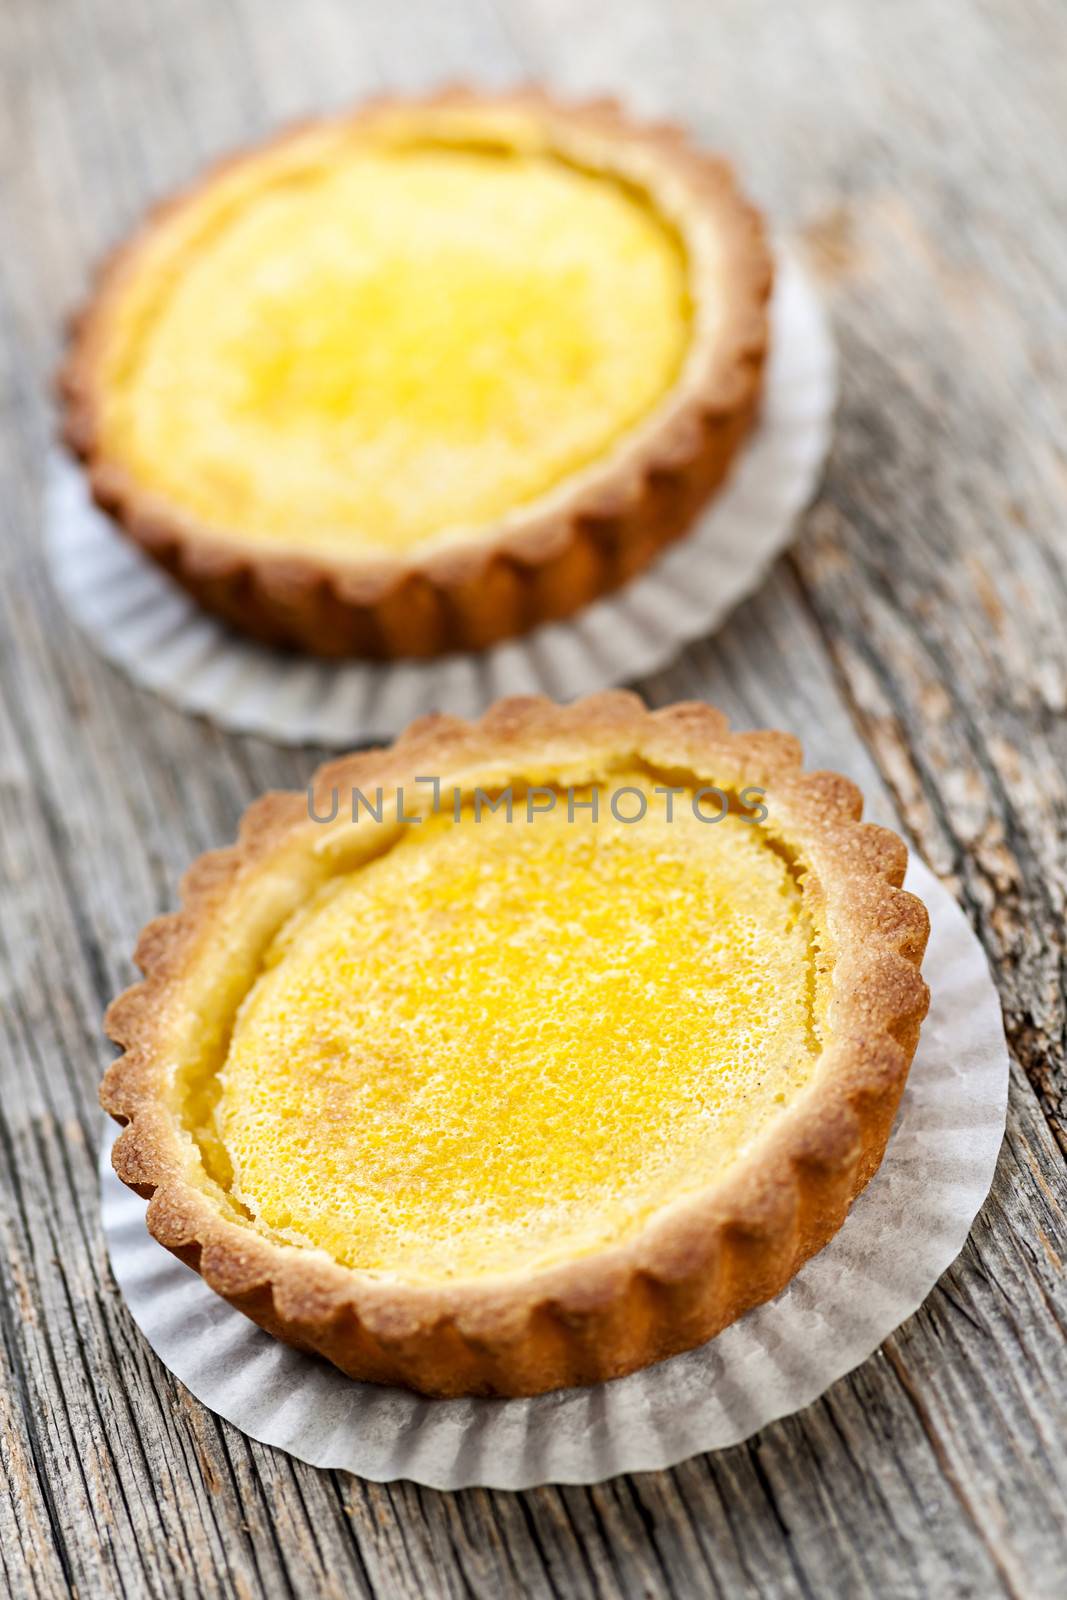 Lemon tarts by elenathewise